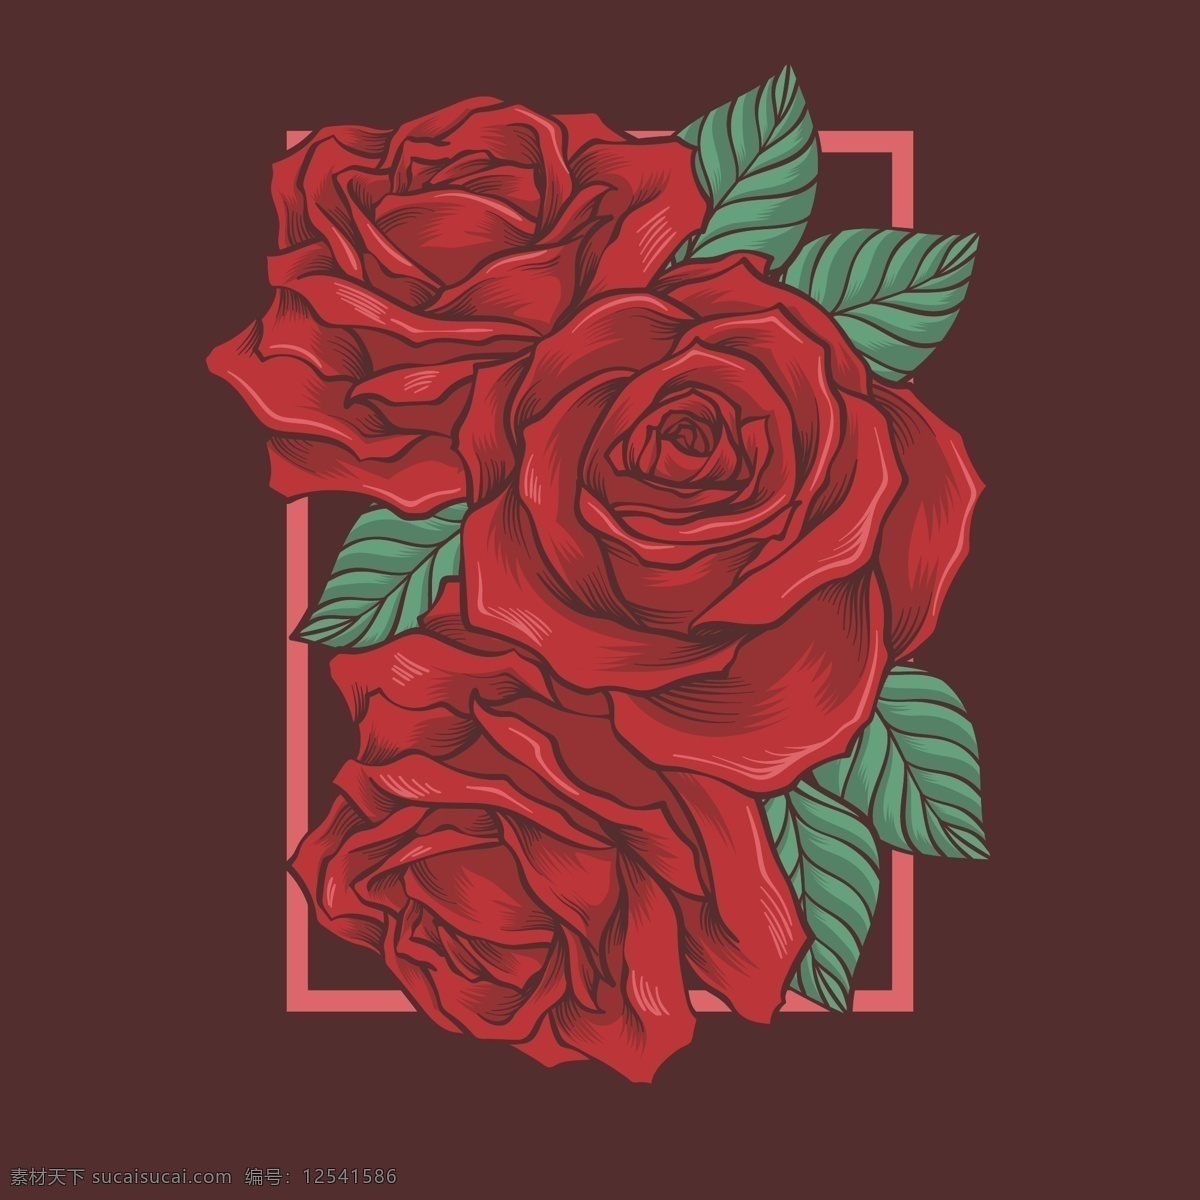 红色玫瑰背景 玫瑰背景 红色玫瑰 玫瑰 鲜红玫瑰 玫瑰花背景 玫瑰花 红色玫瑰花 红玫瑰花 共享设计矢量 生物世界 花草